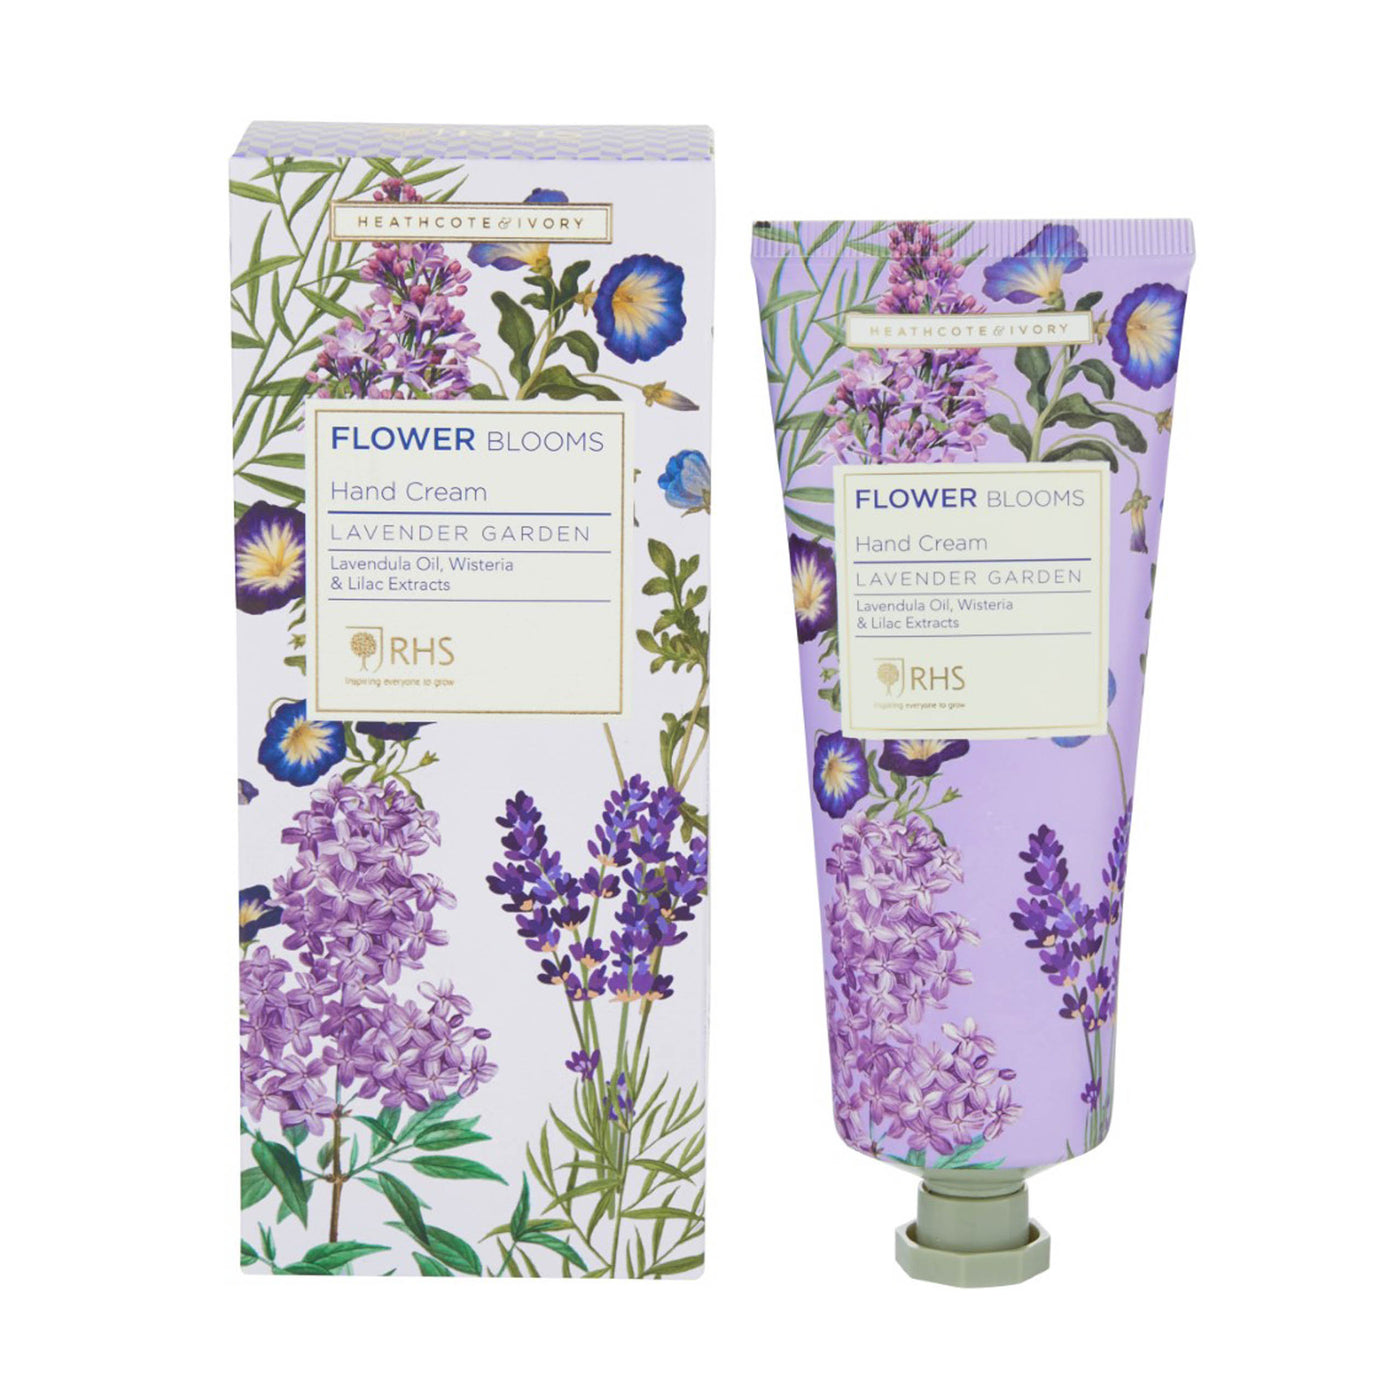 RHS Lavender Garden Hand Cream - Heathcote & Ivory